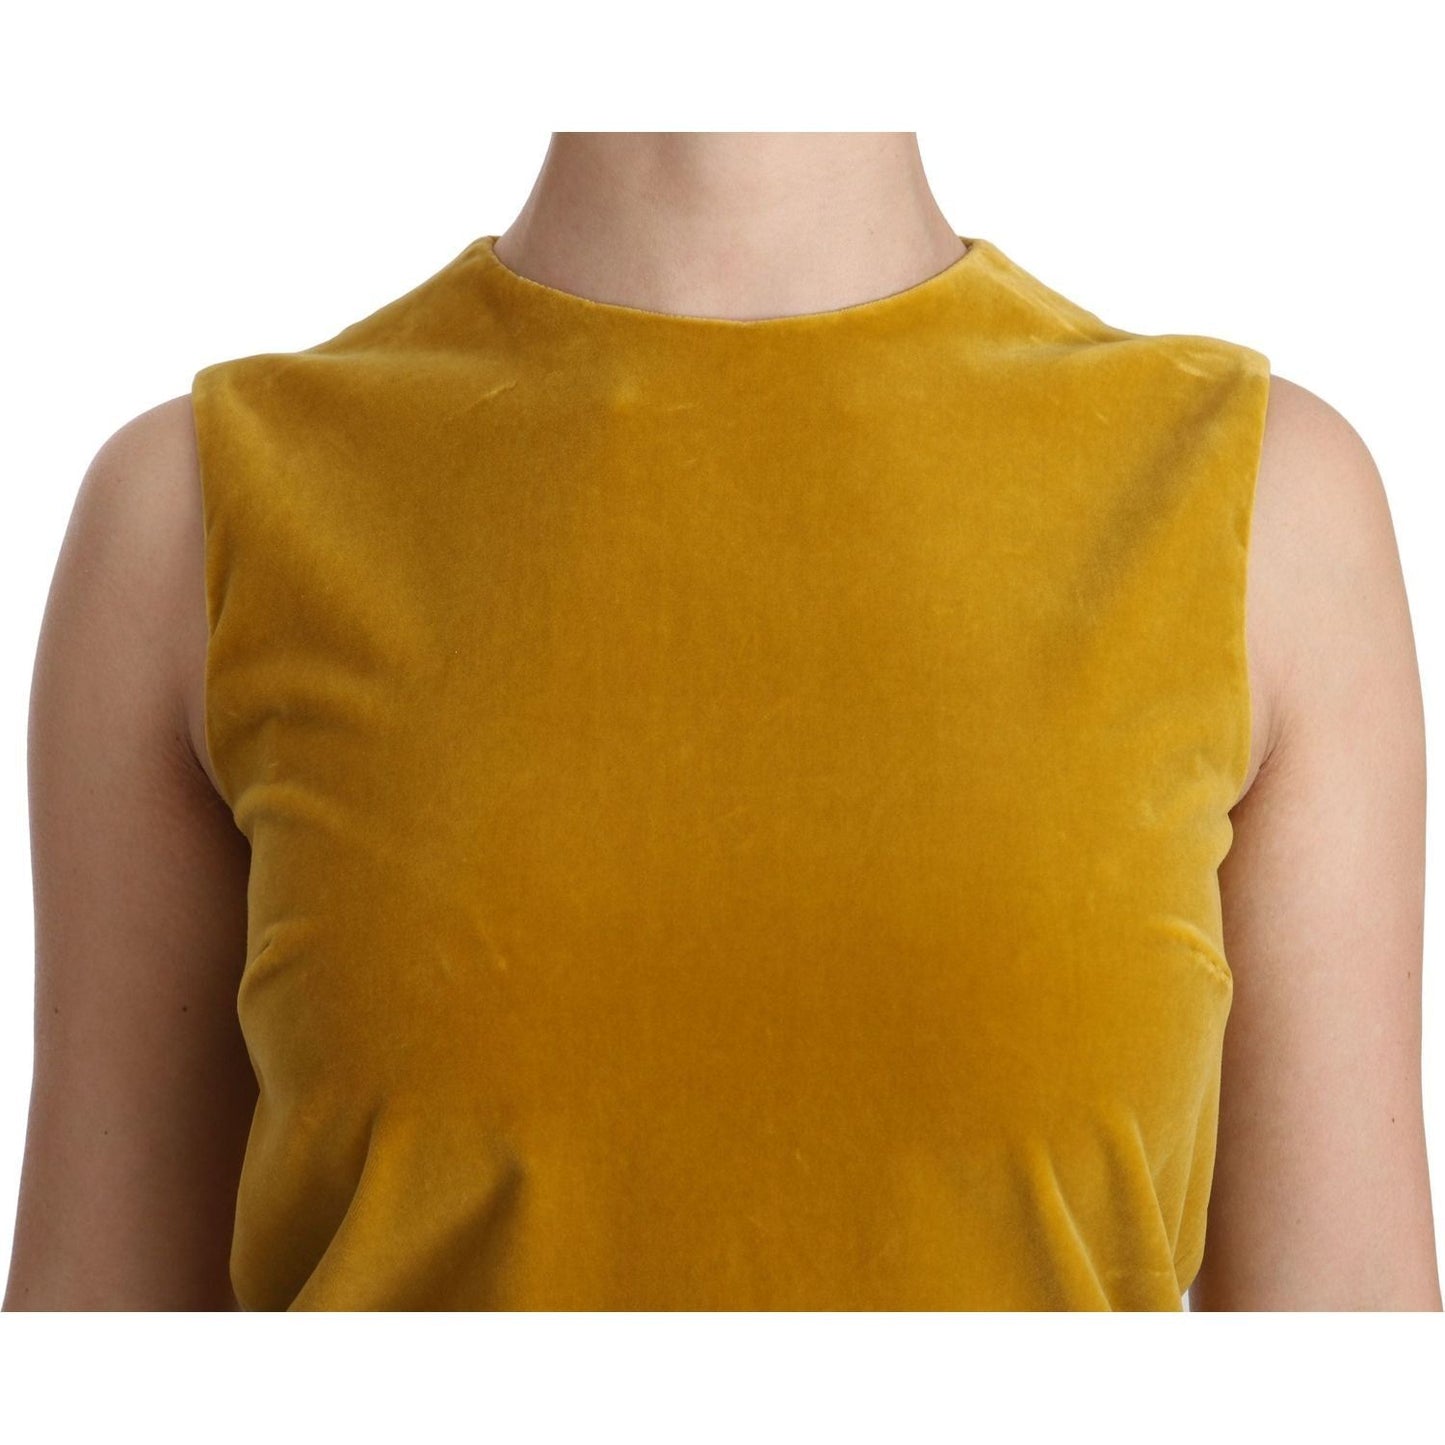 Dolce & Gabbana | Mustard Velvet Stretch Shift Mini Dress | McRichard Designer Brands